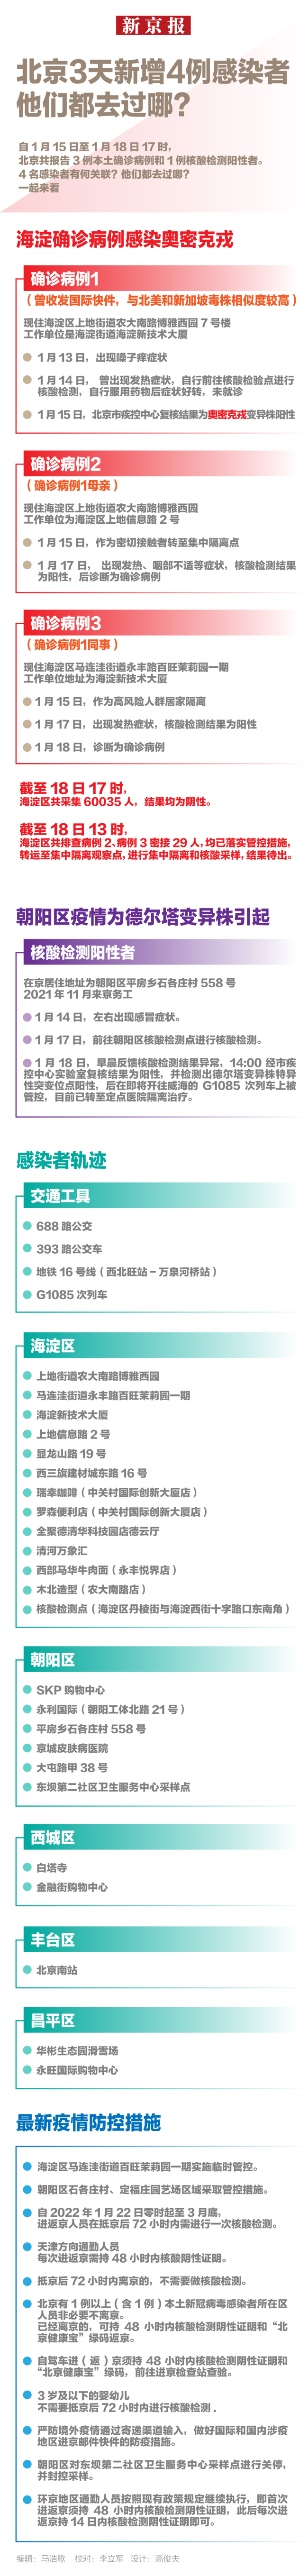 杭州新增3例新冠肺炎确诊病例，为集中隔离人员 - Bing Search - PeraPlay Gaming 百度热点快讯